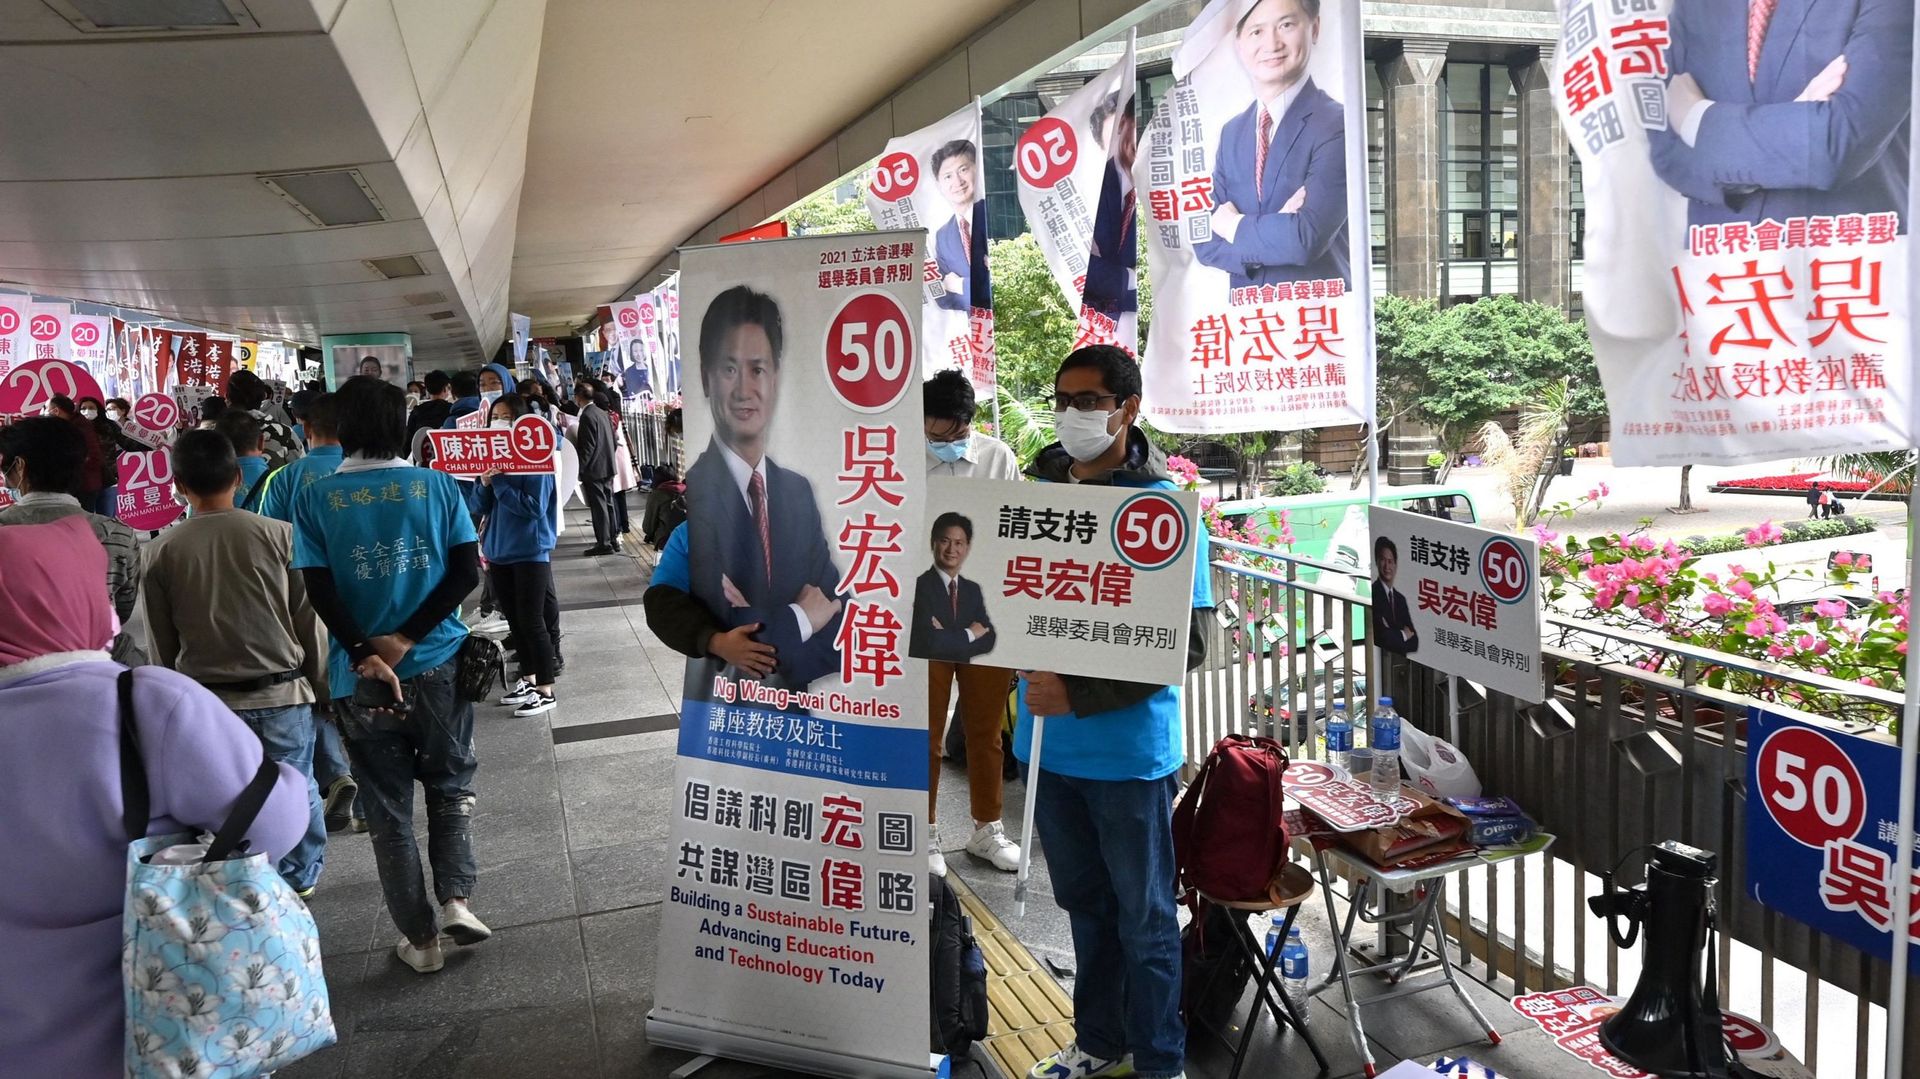 Un homme fait campagne pour un candidat aux élections du Conseil législatif dans le district de Wanchai à Hong Kong, le 19 décembre 2021.